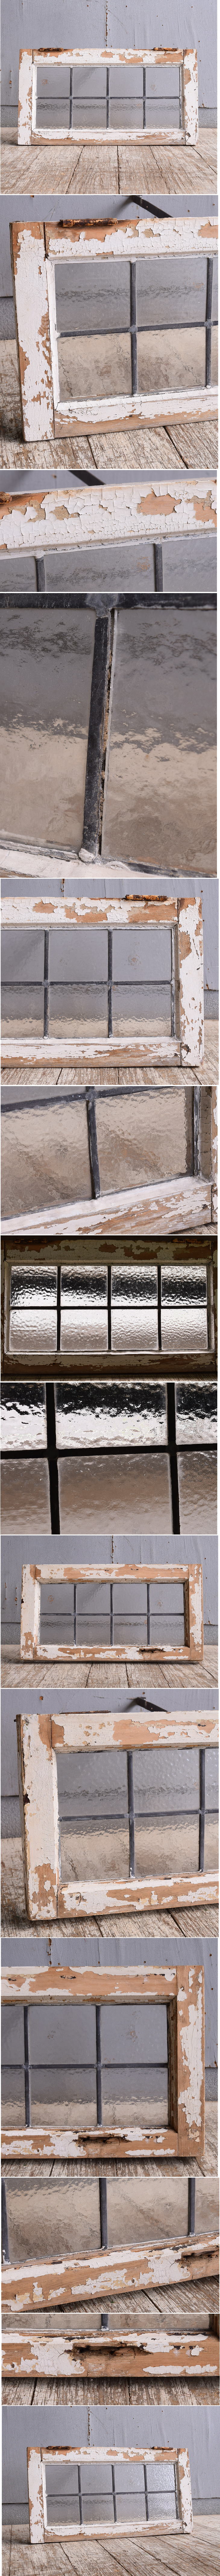 イギリス アンティーク 窓 無色透明 10875